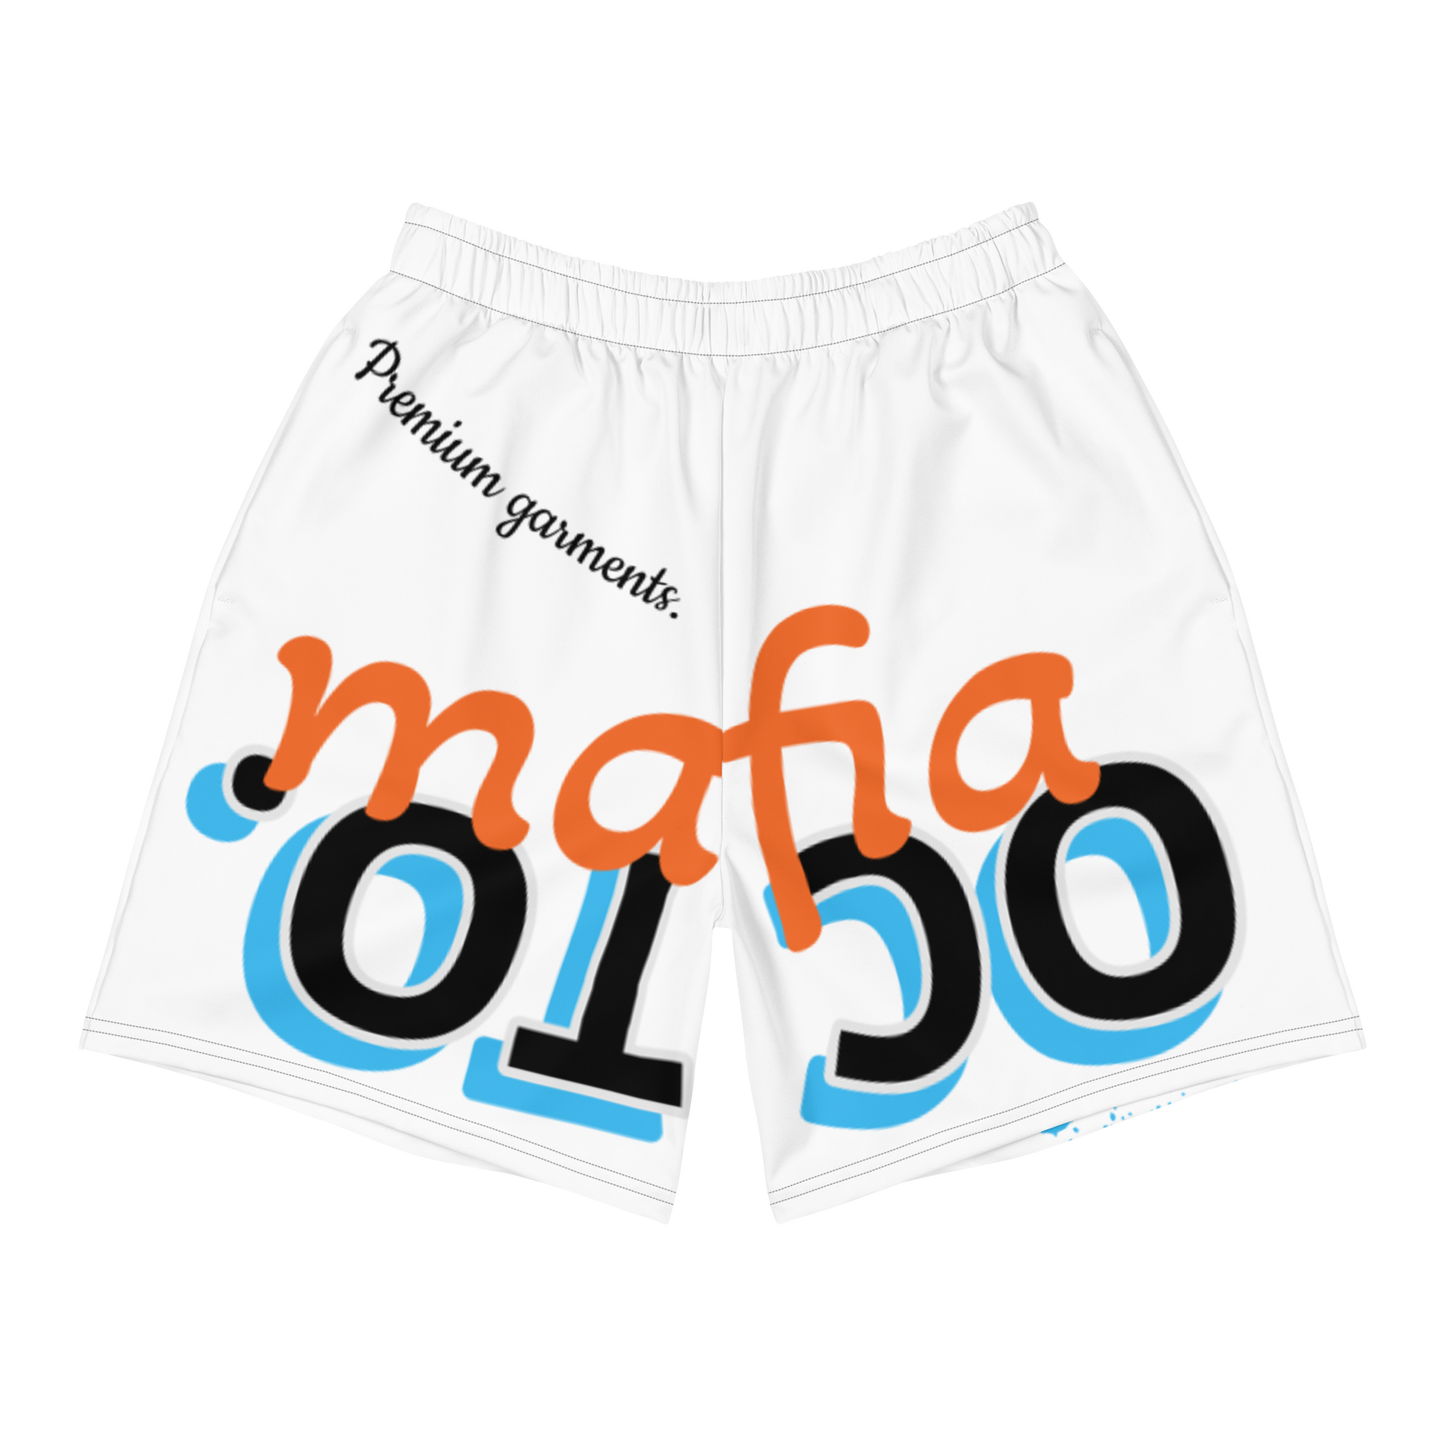 Octo. Mafia "art launder" Shorts